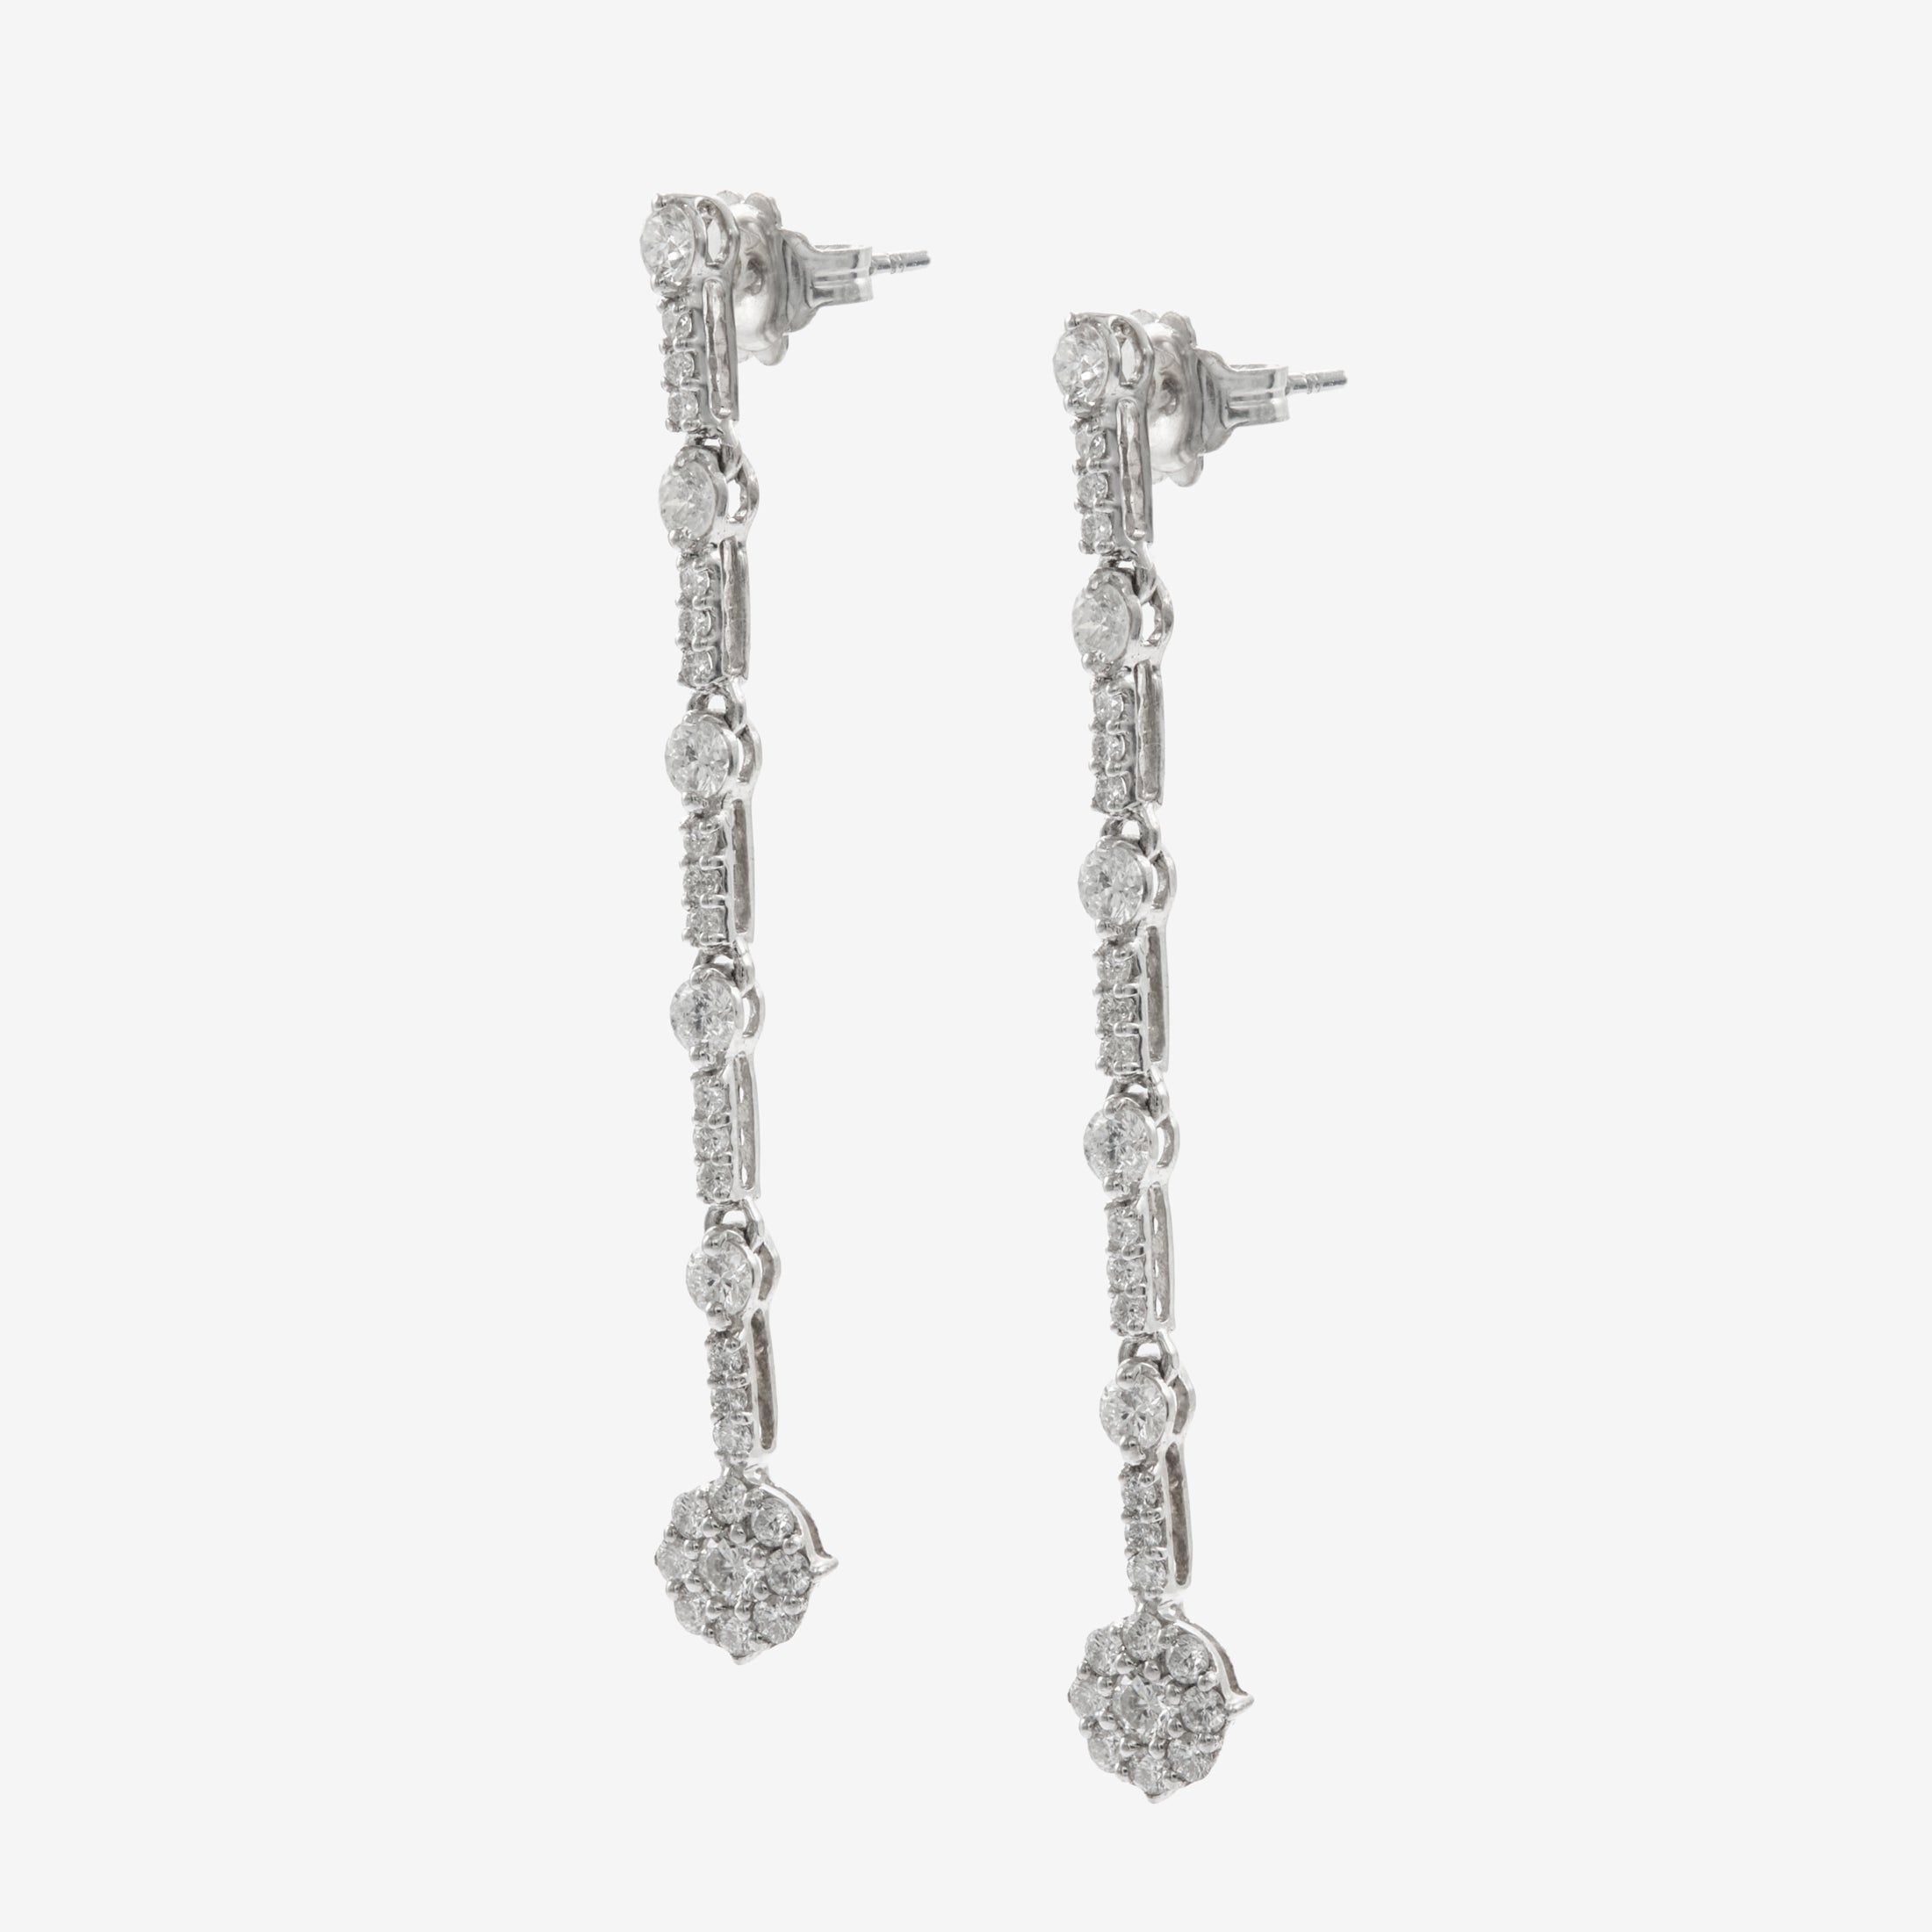 Loren earrings with diamonds